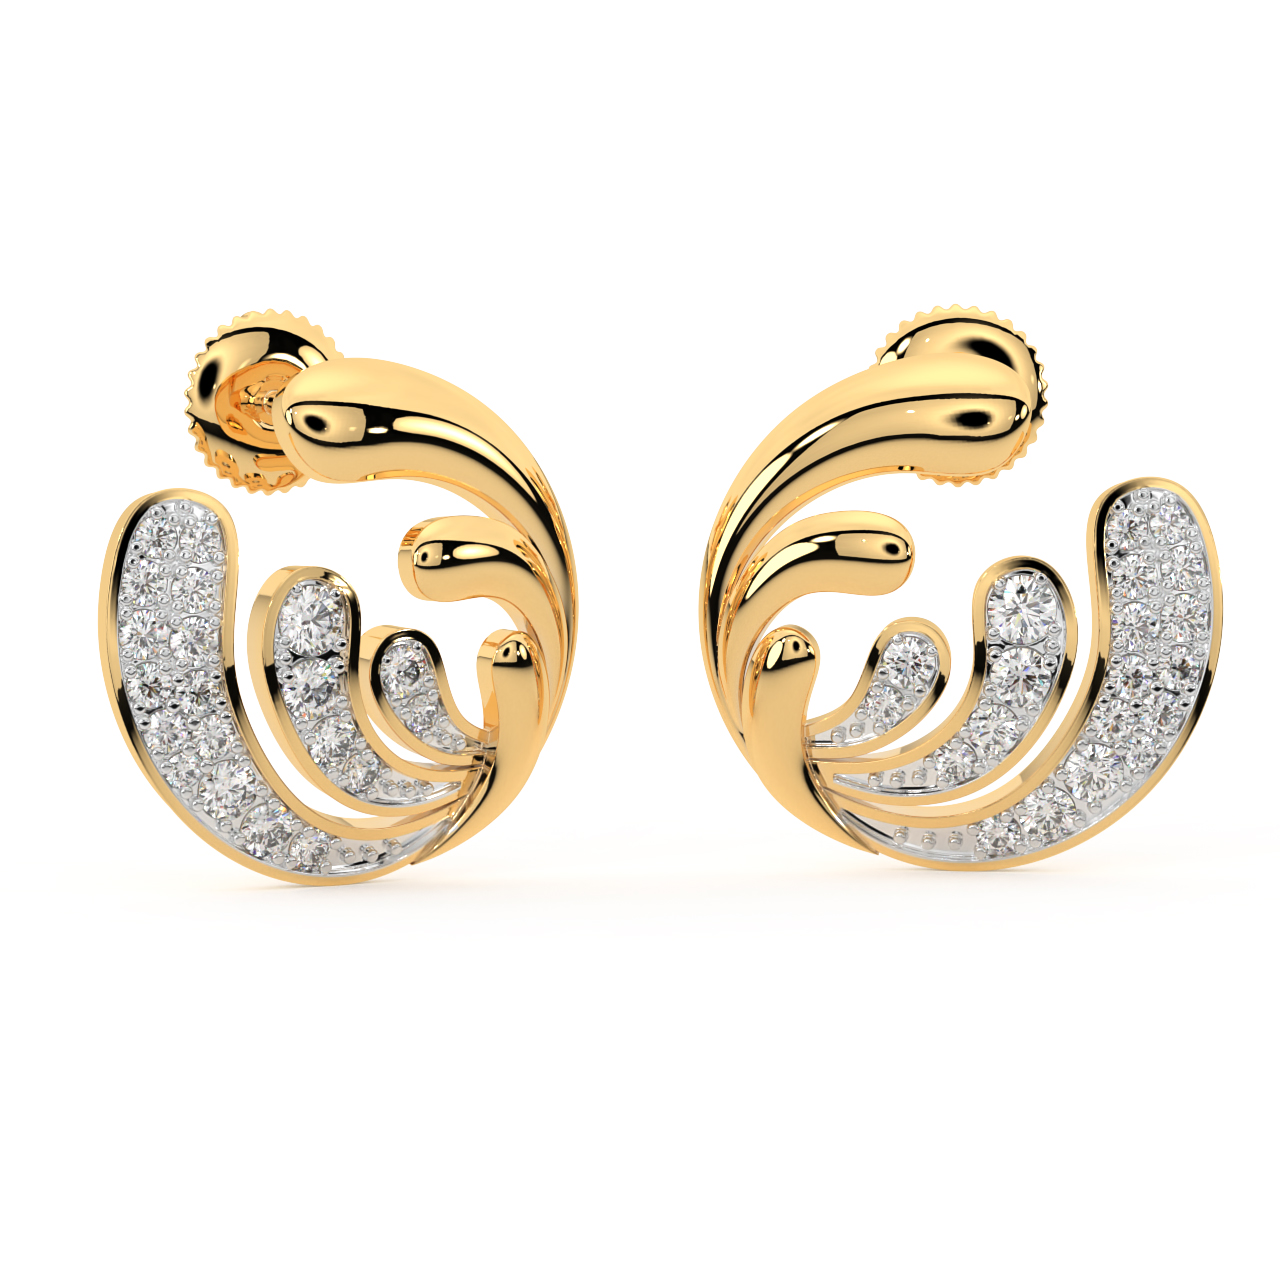 Jean Queen Diamond Earrings